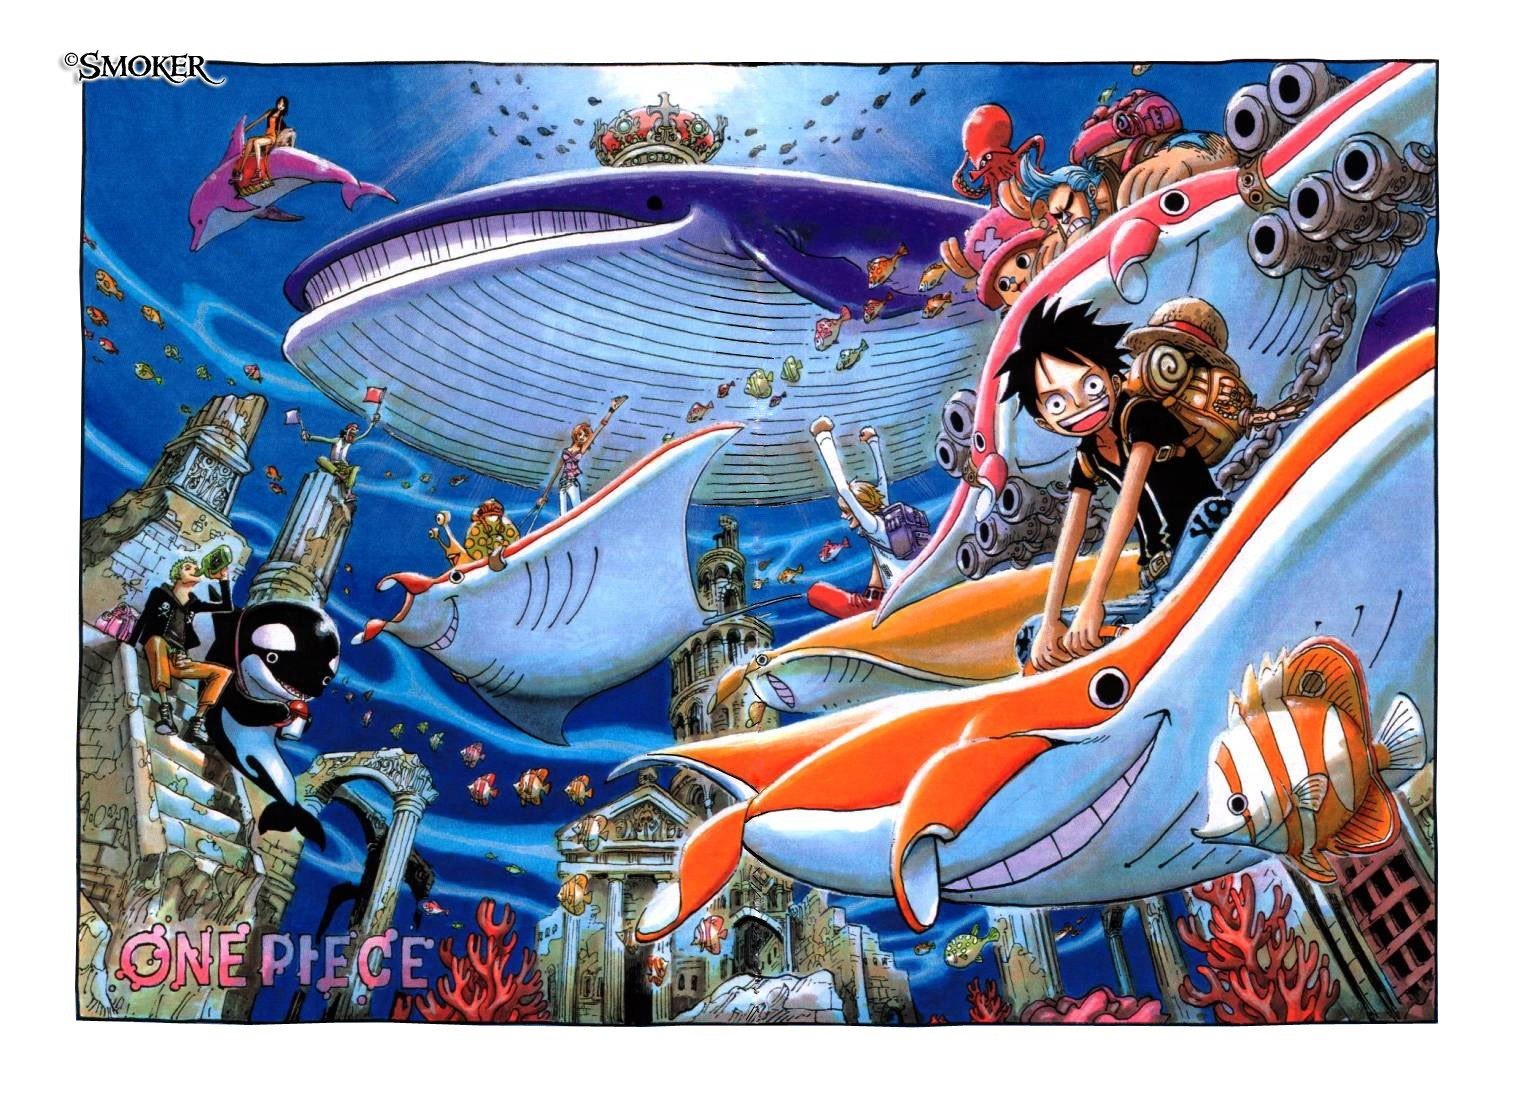 One Piece, Monkey D. Luffy, Roronoa Zoro, Nami, Sanji, Tony Tony